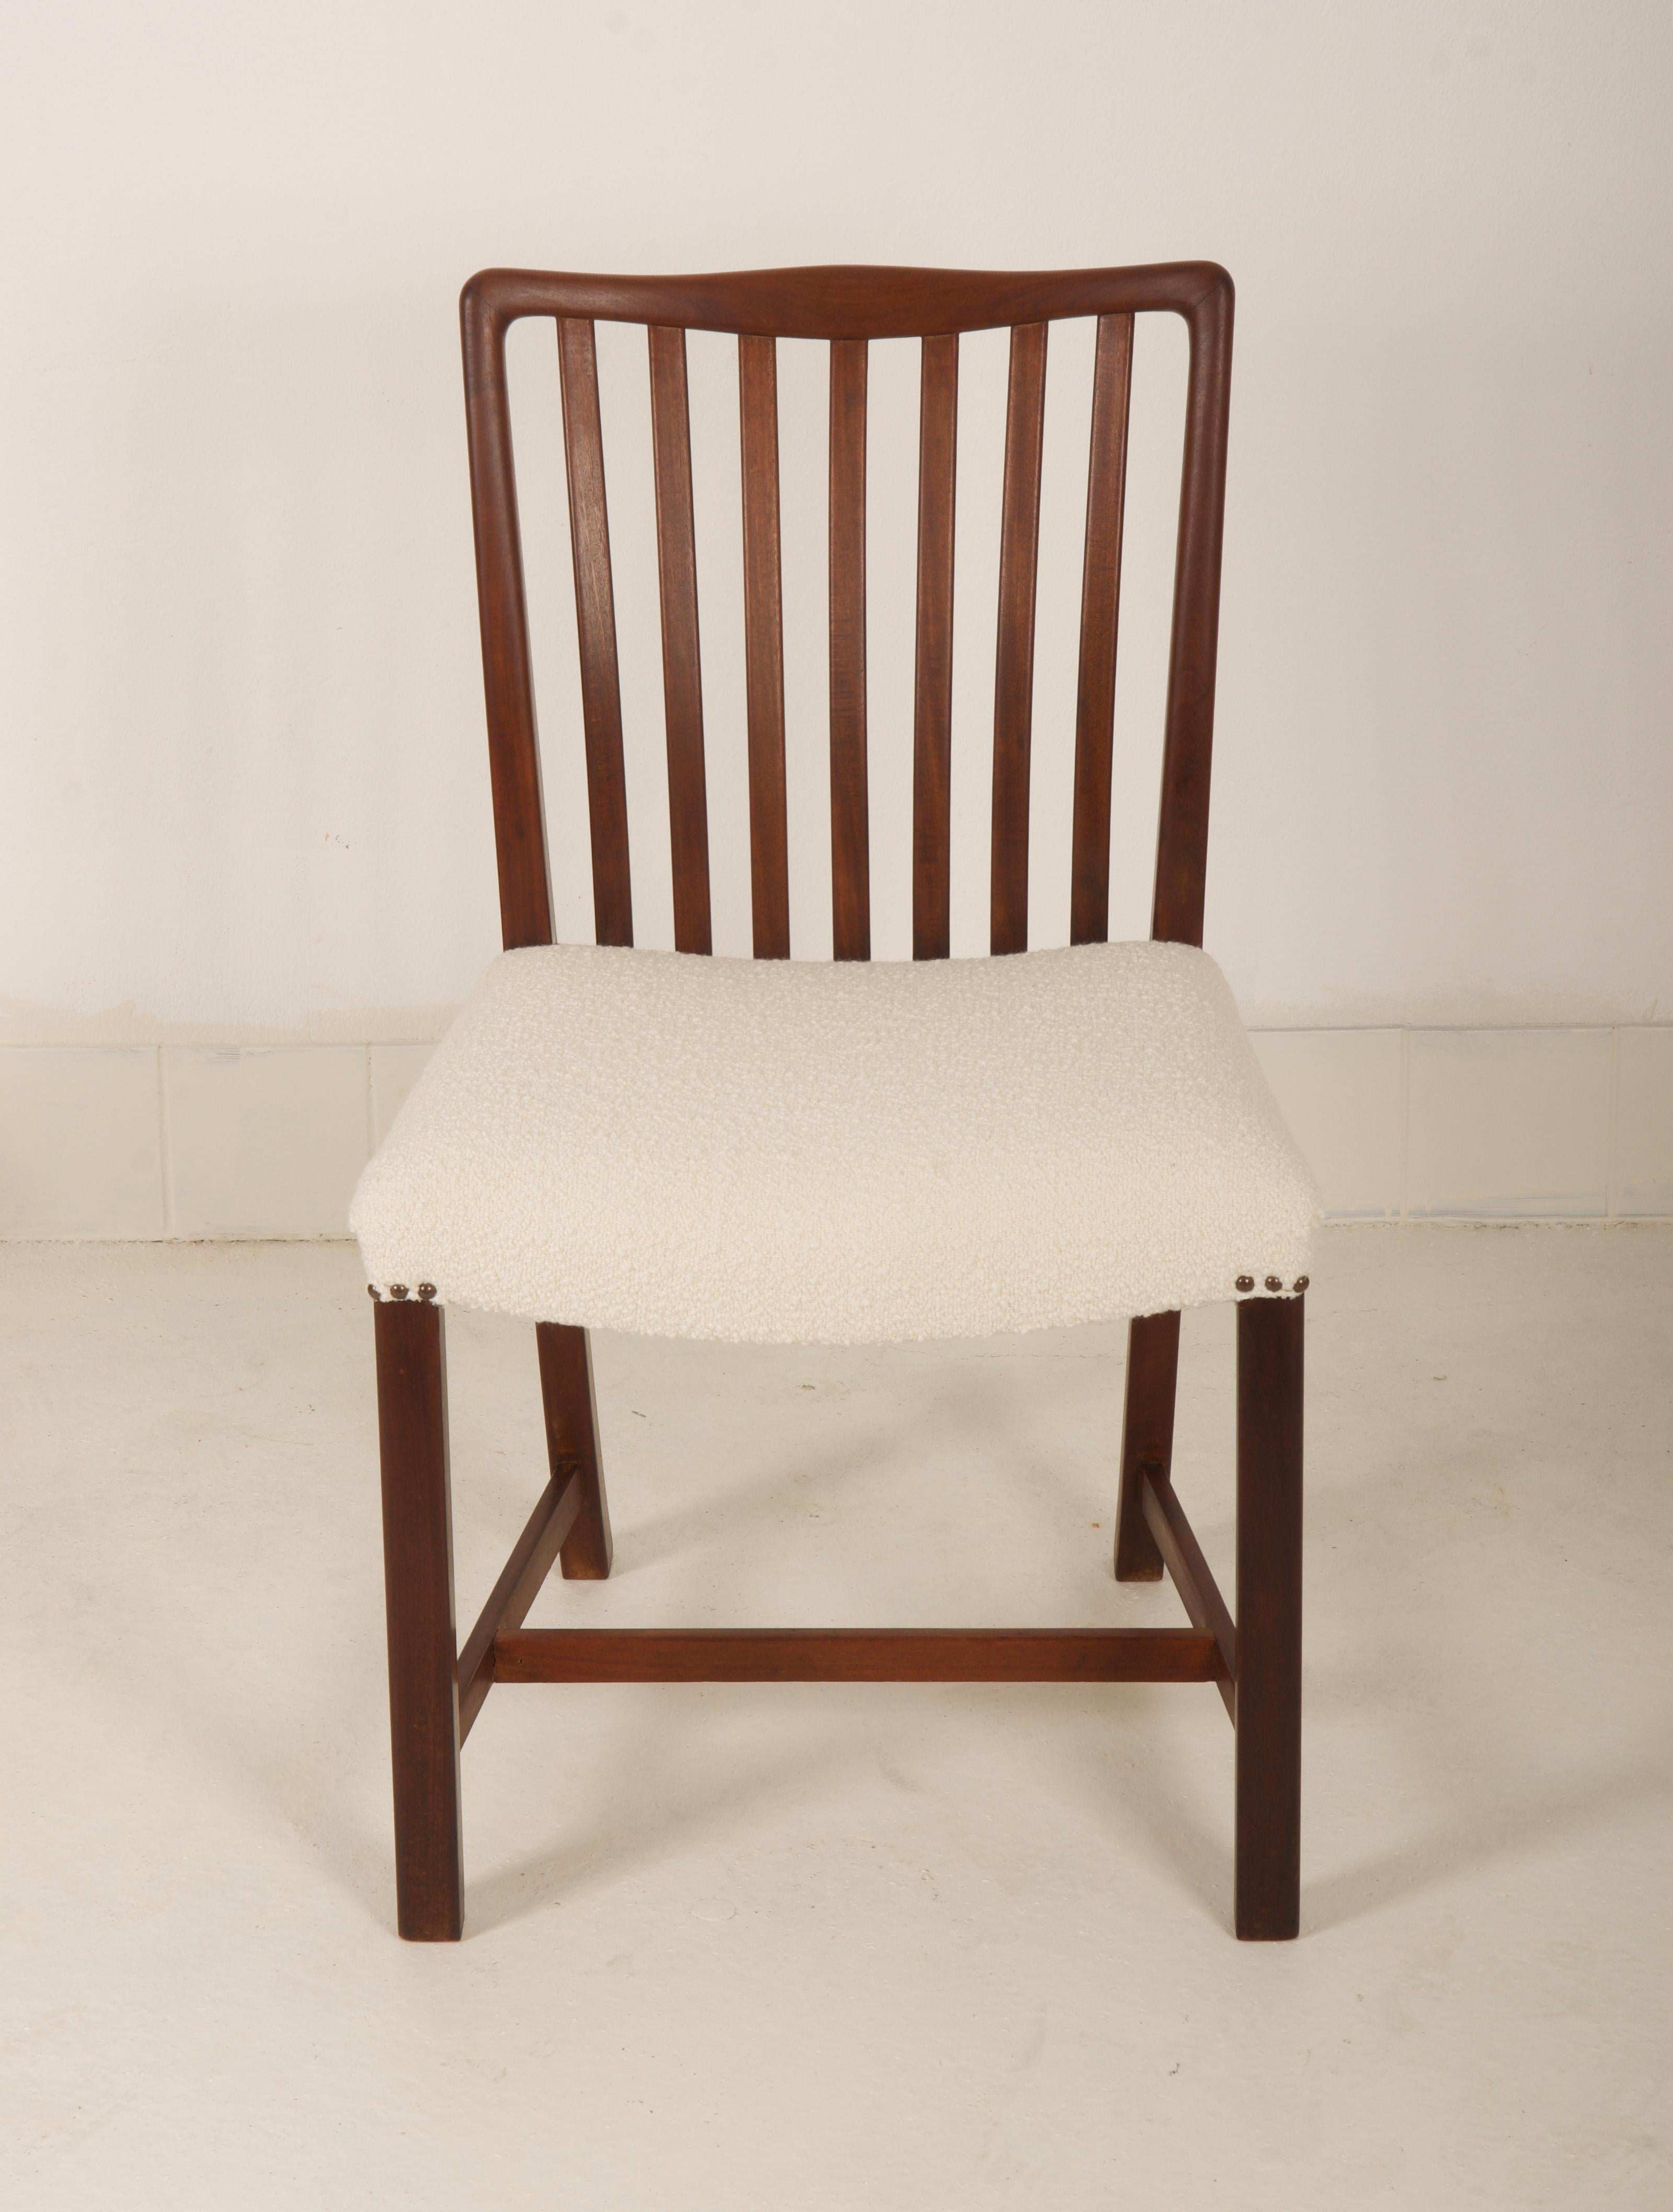 Six chaises fabriquées par Sondergaard Mobler au Danemark à la fin des années 1940.
Le cadre est fait d'acajou, seulement un restauré le reste délai de livraison 3-4 semaines. 
Possibilité de rembourrage avec un autre tissu sur demande.

Mesures